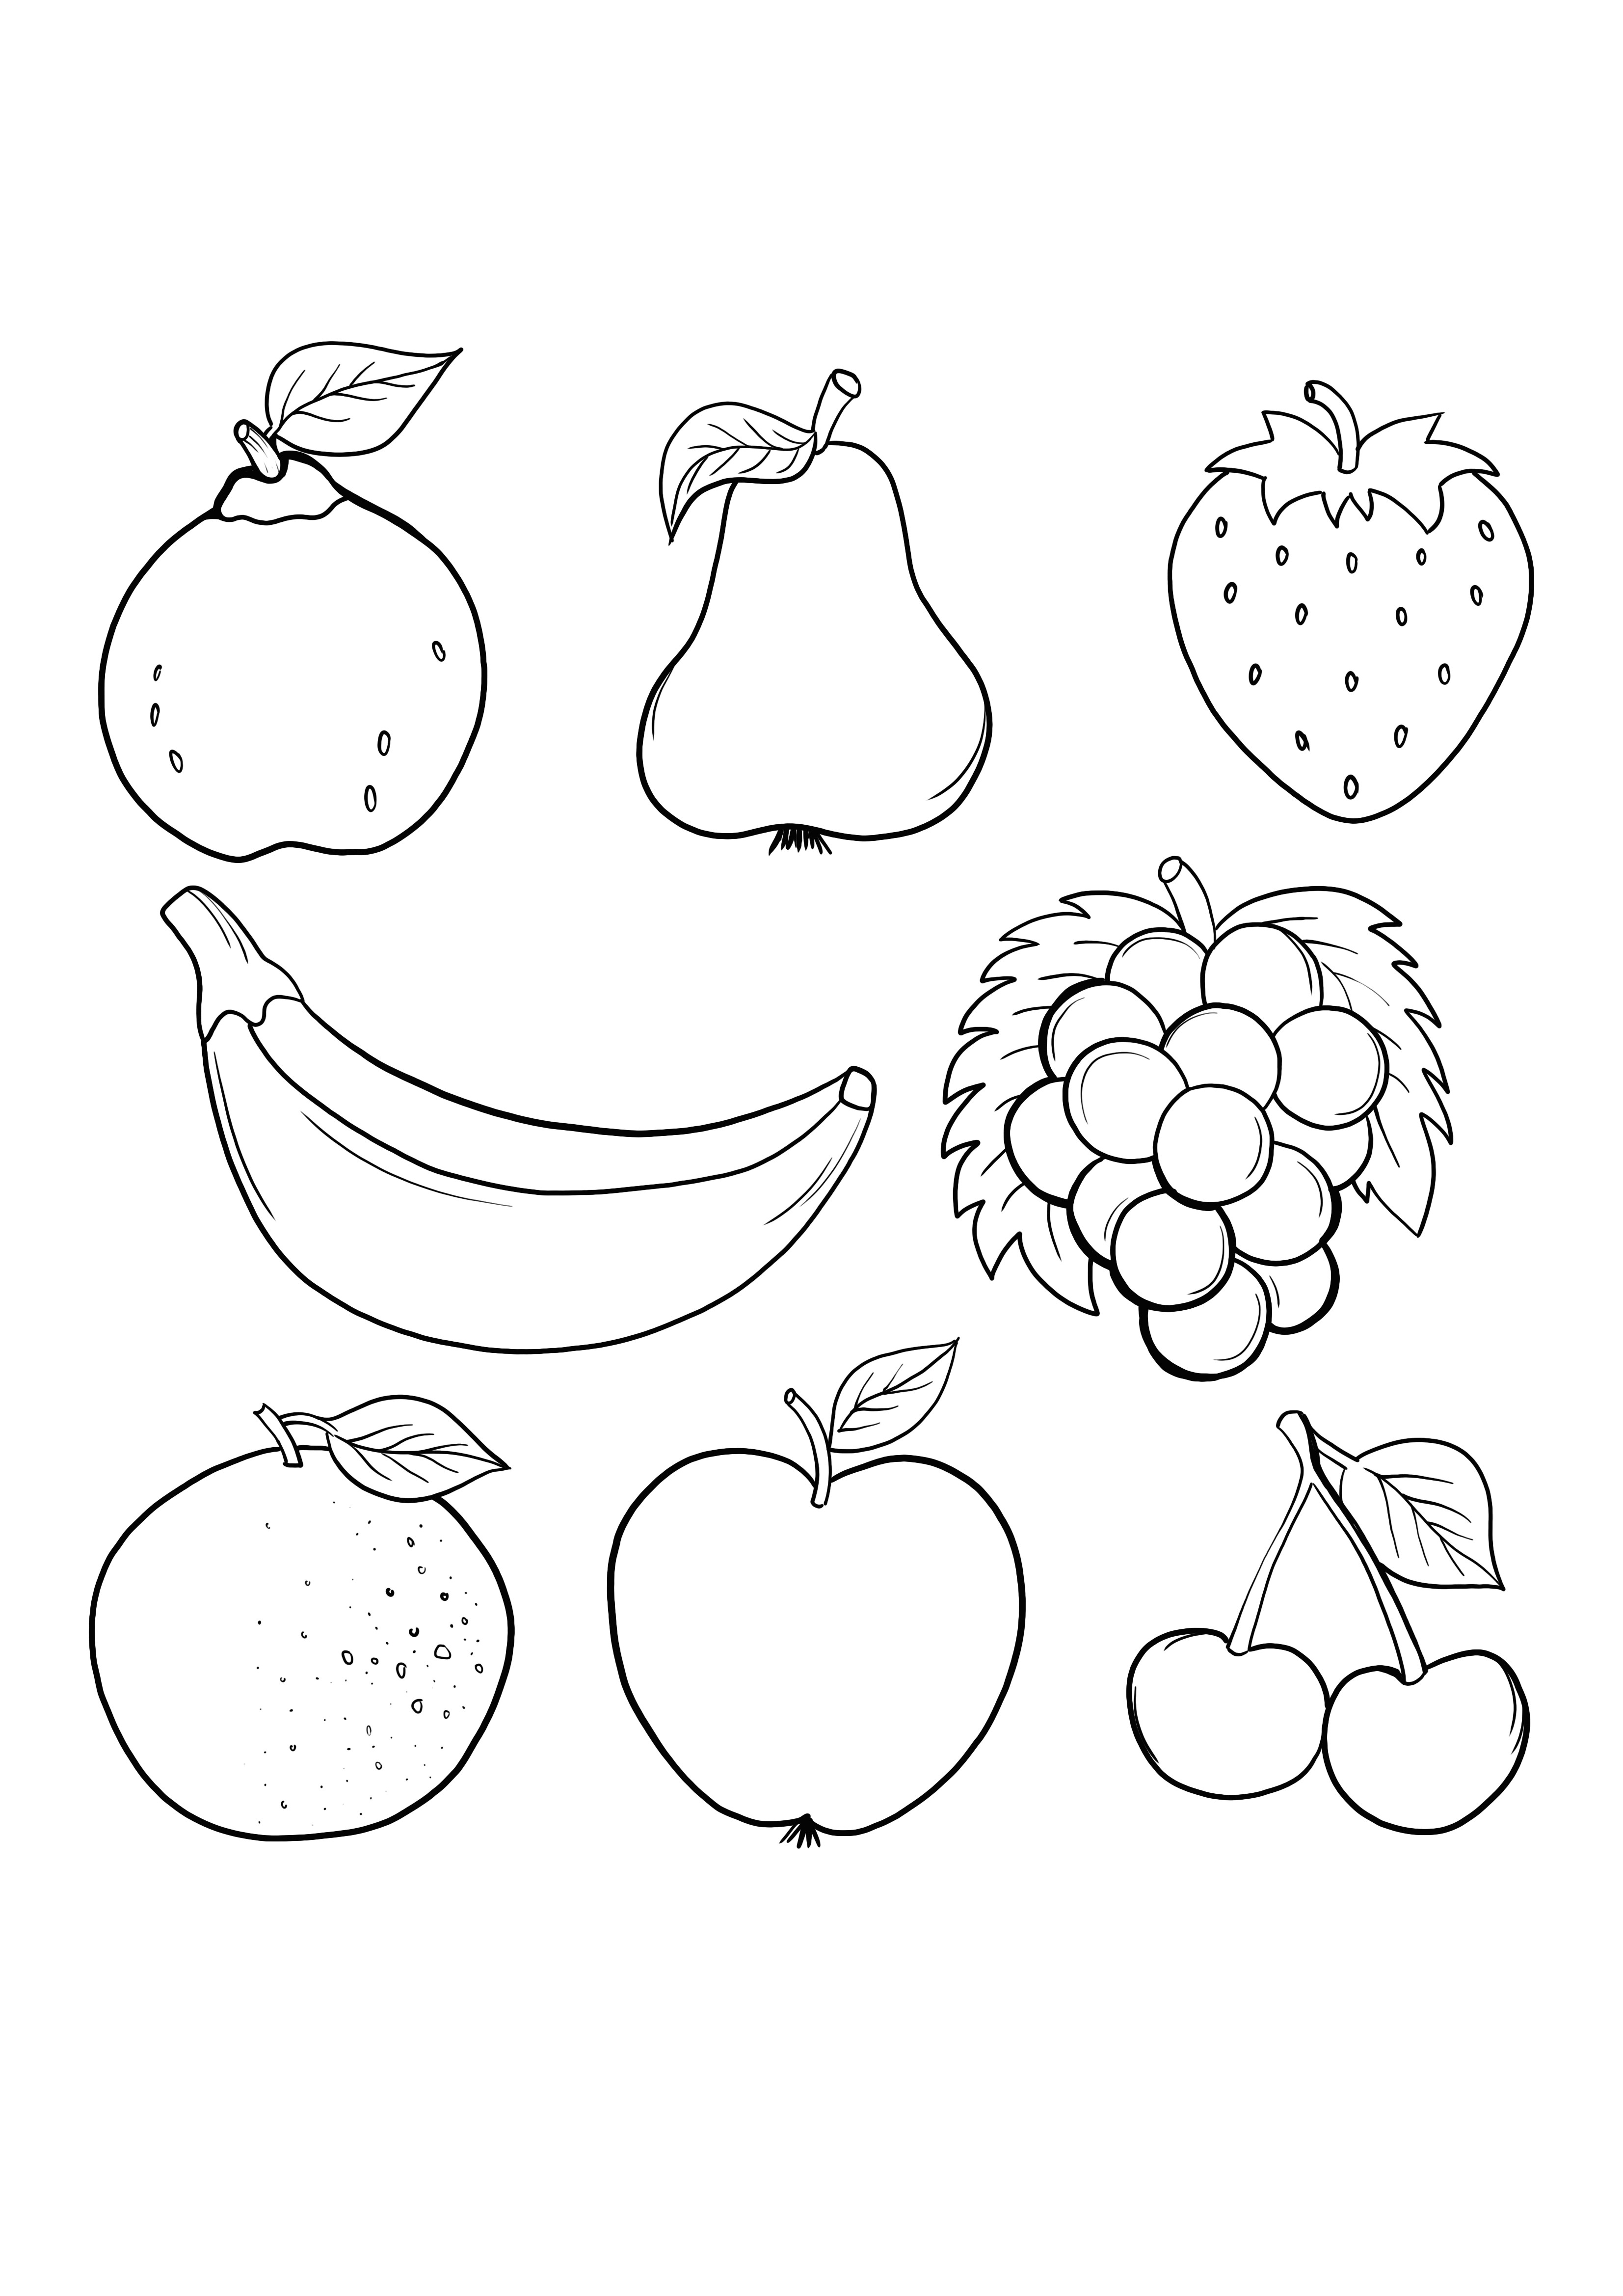 frutas aleatórias para colorir para imprimir de graça